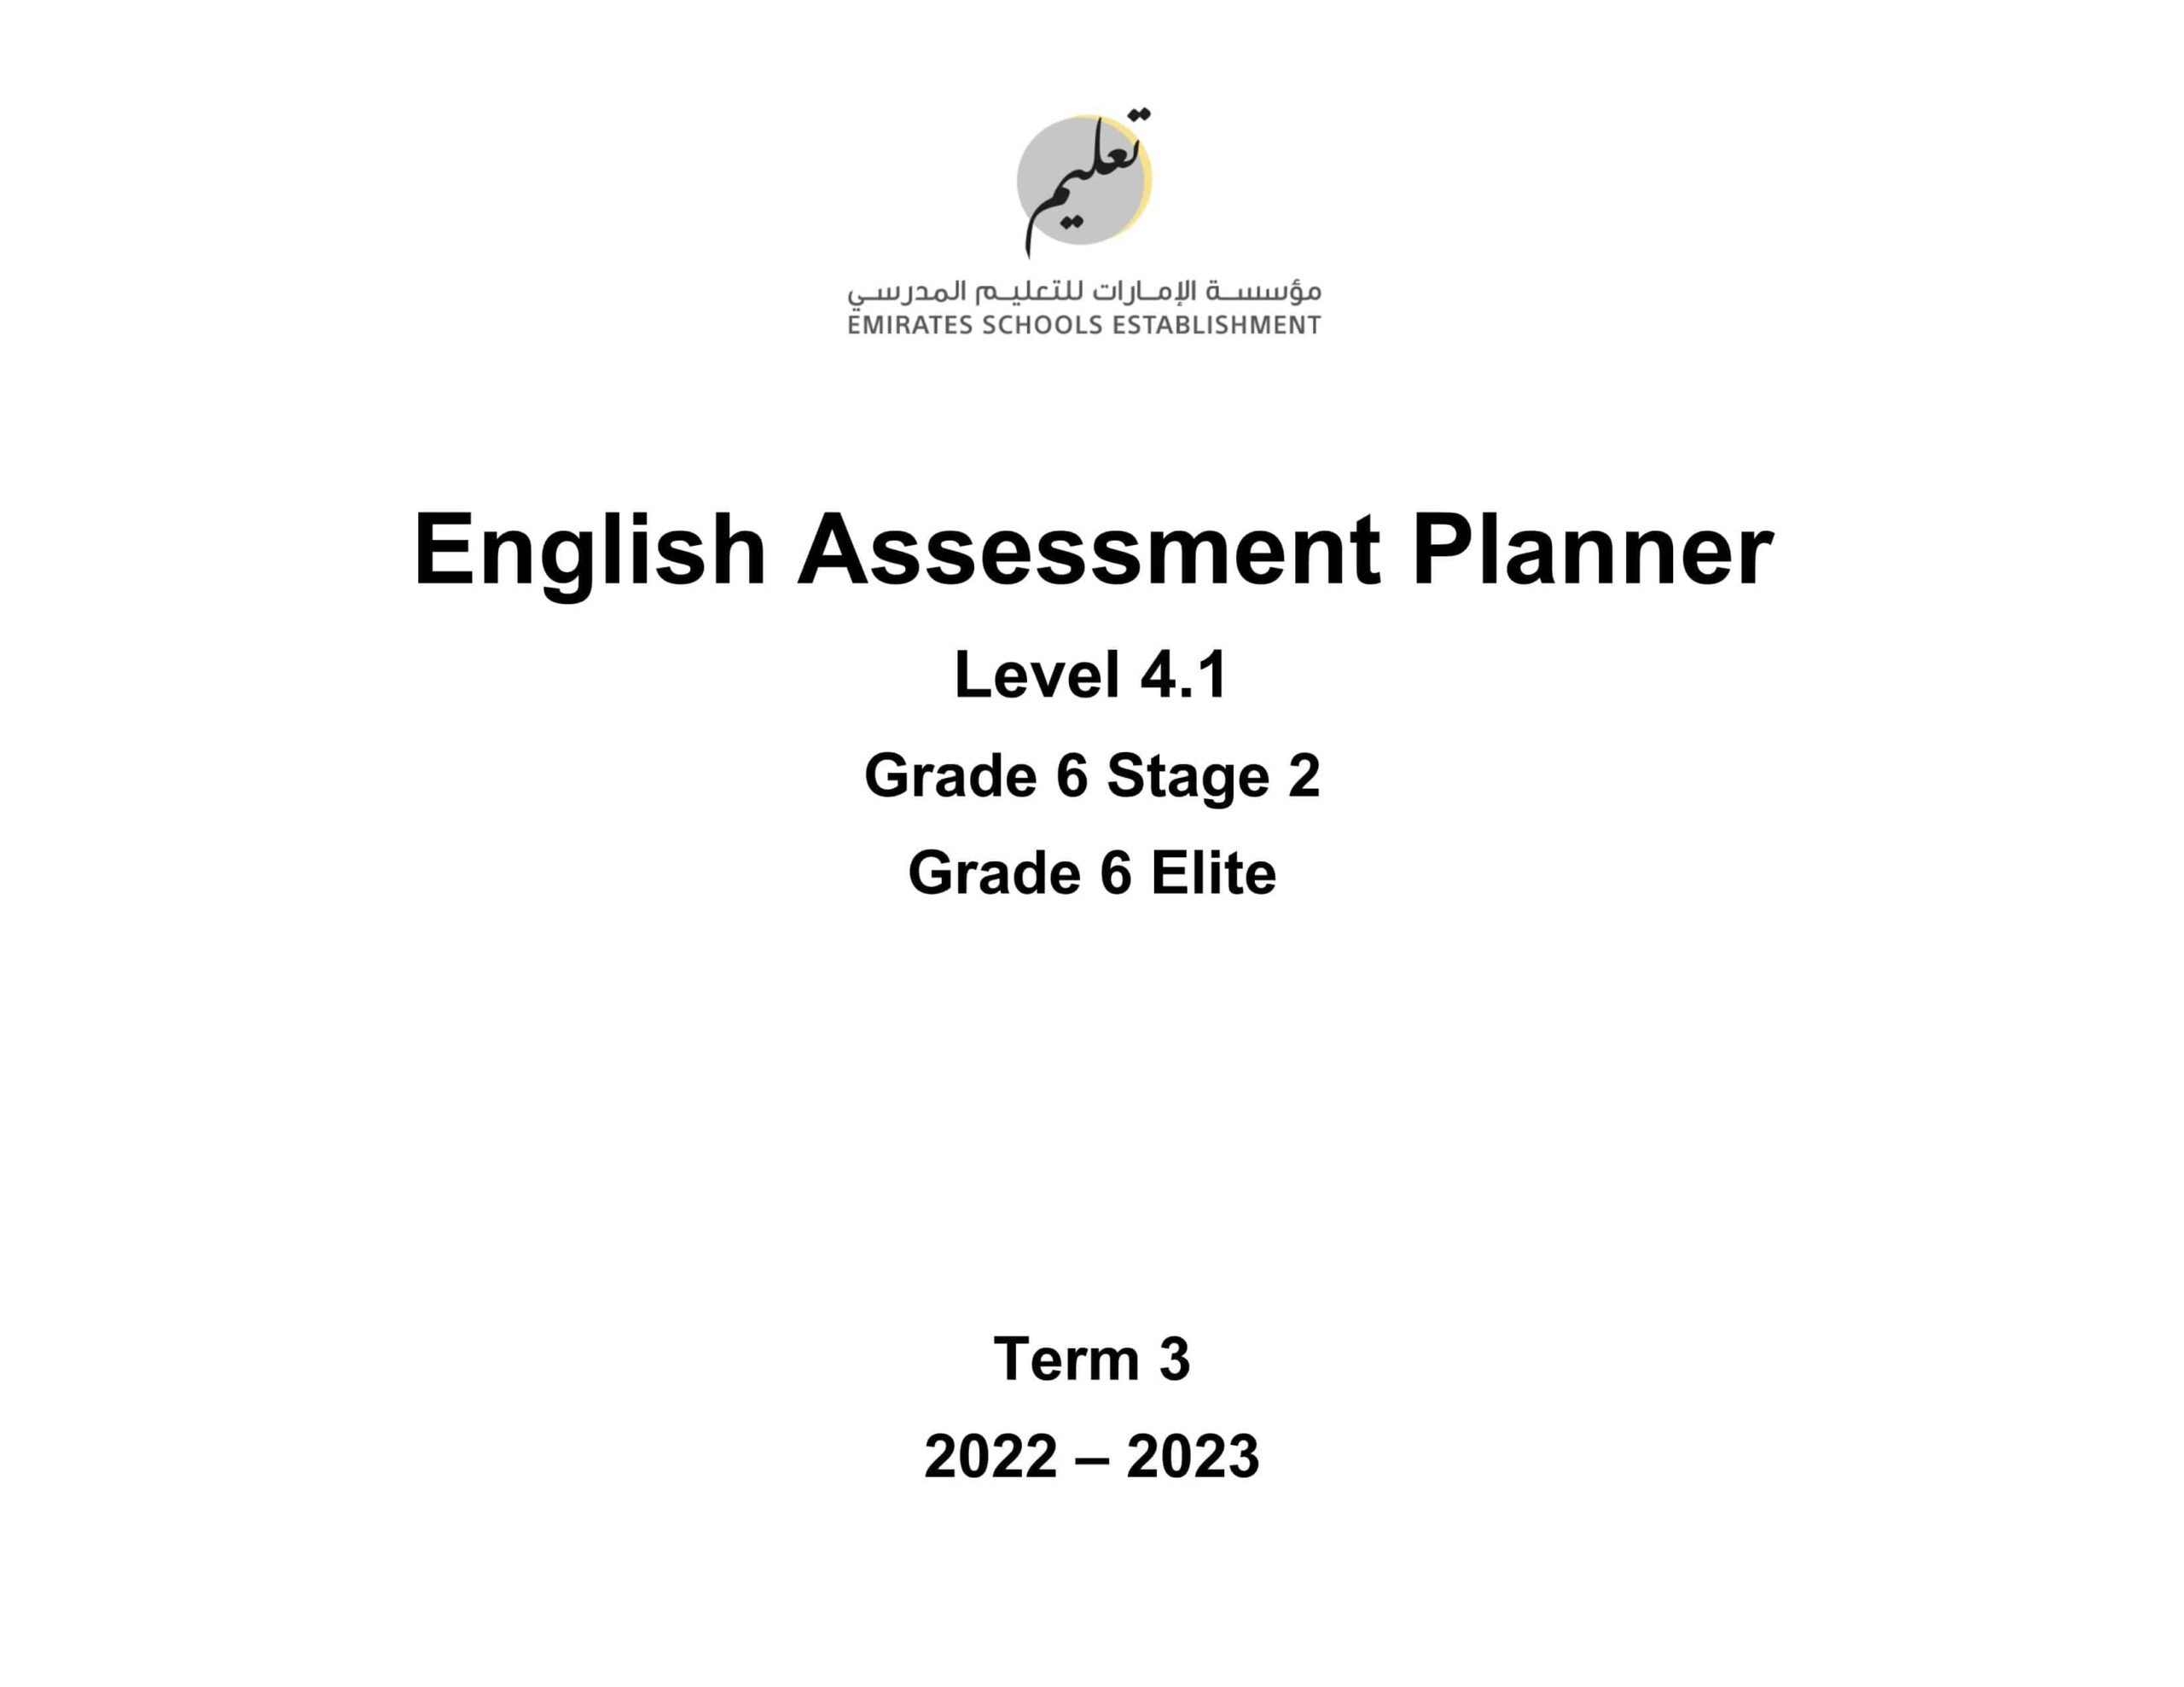 Assessment Planner اللغة الإنجليزية الصف السادس Stage 2 & Elite الفصل الدراسي الثالث 2022-2023